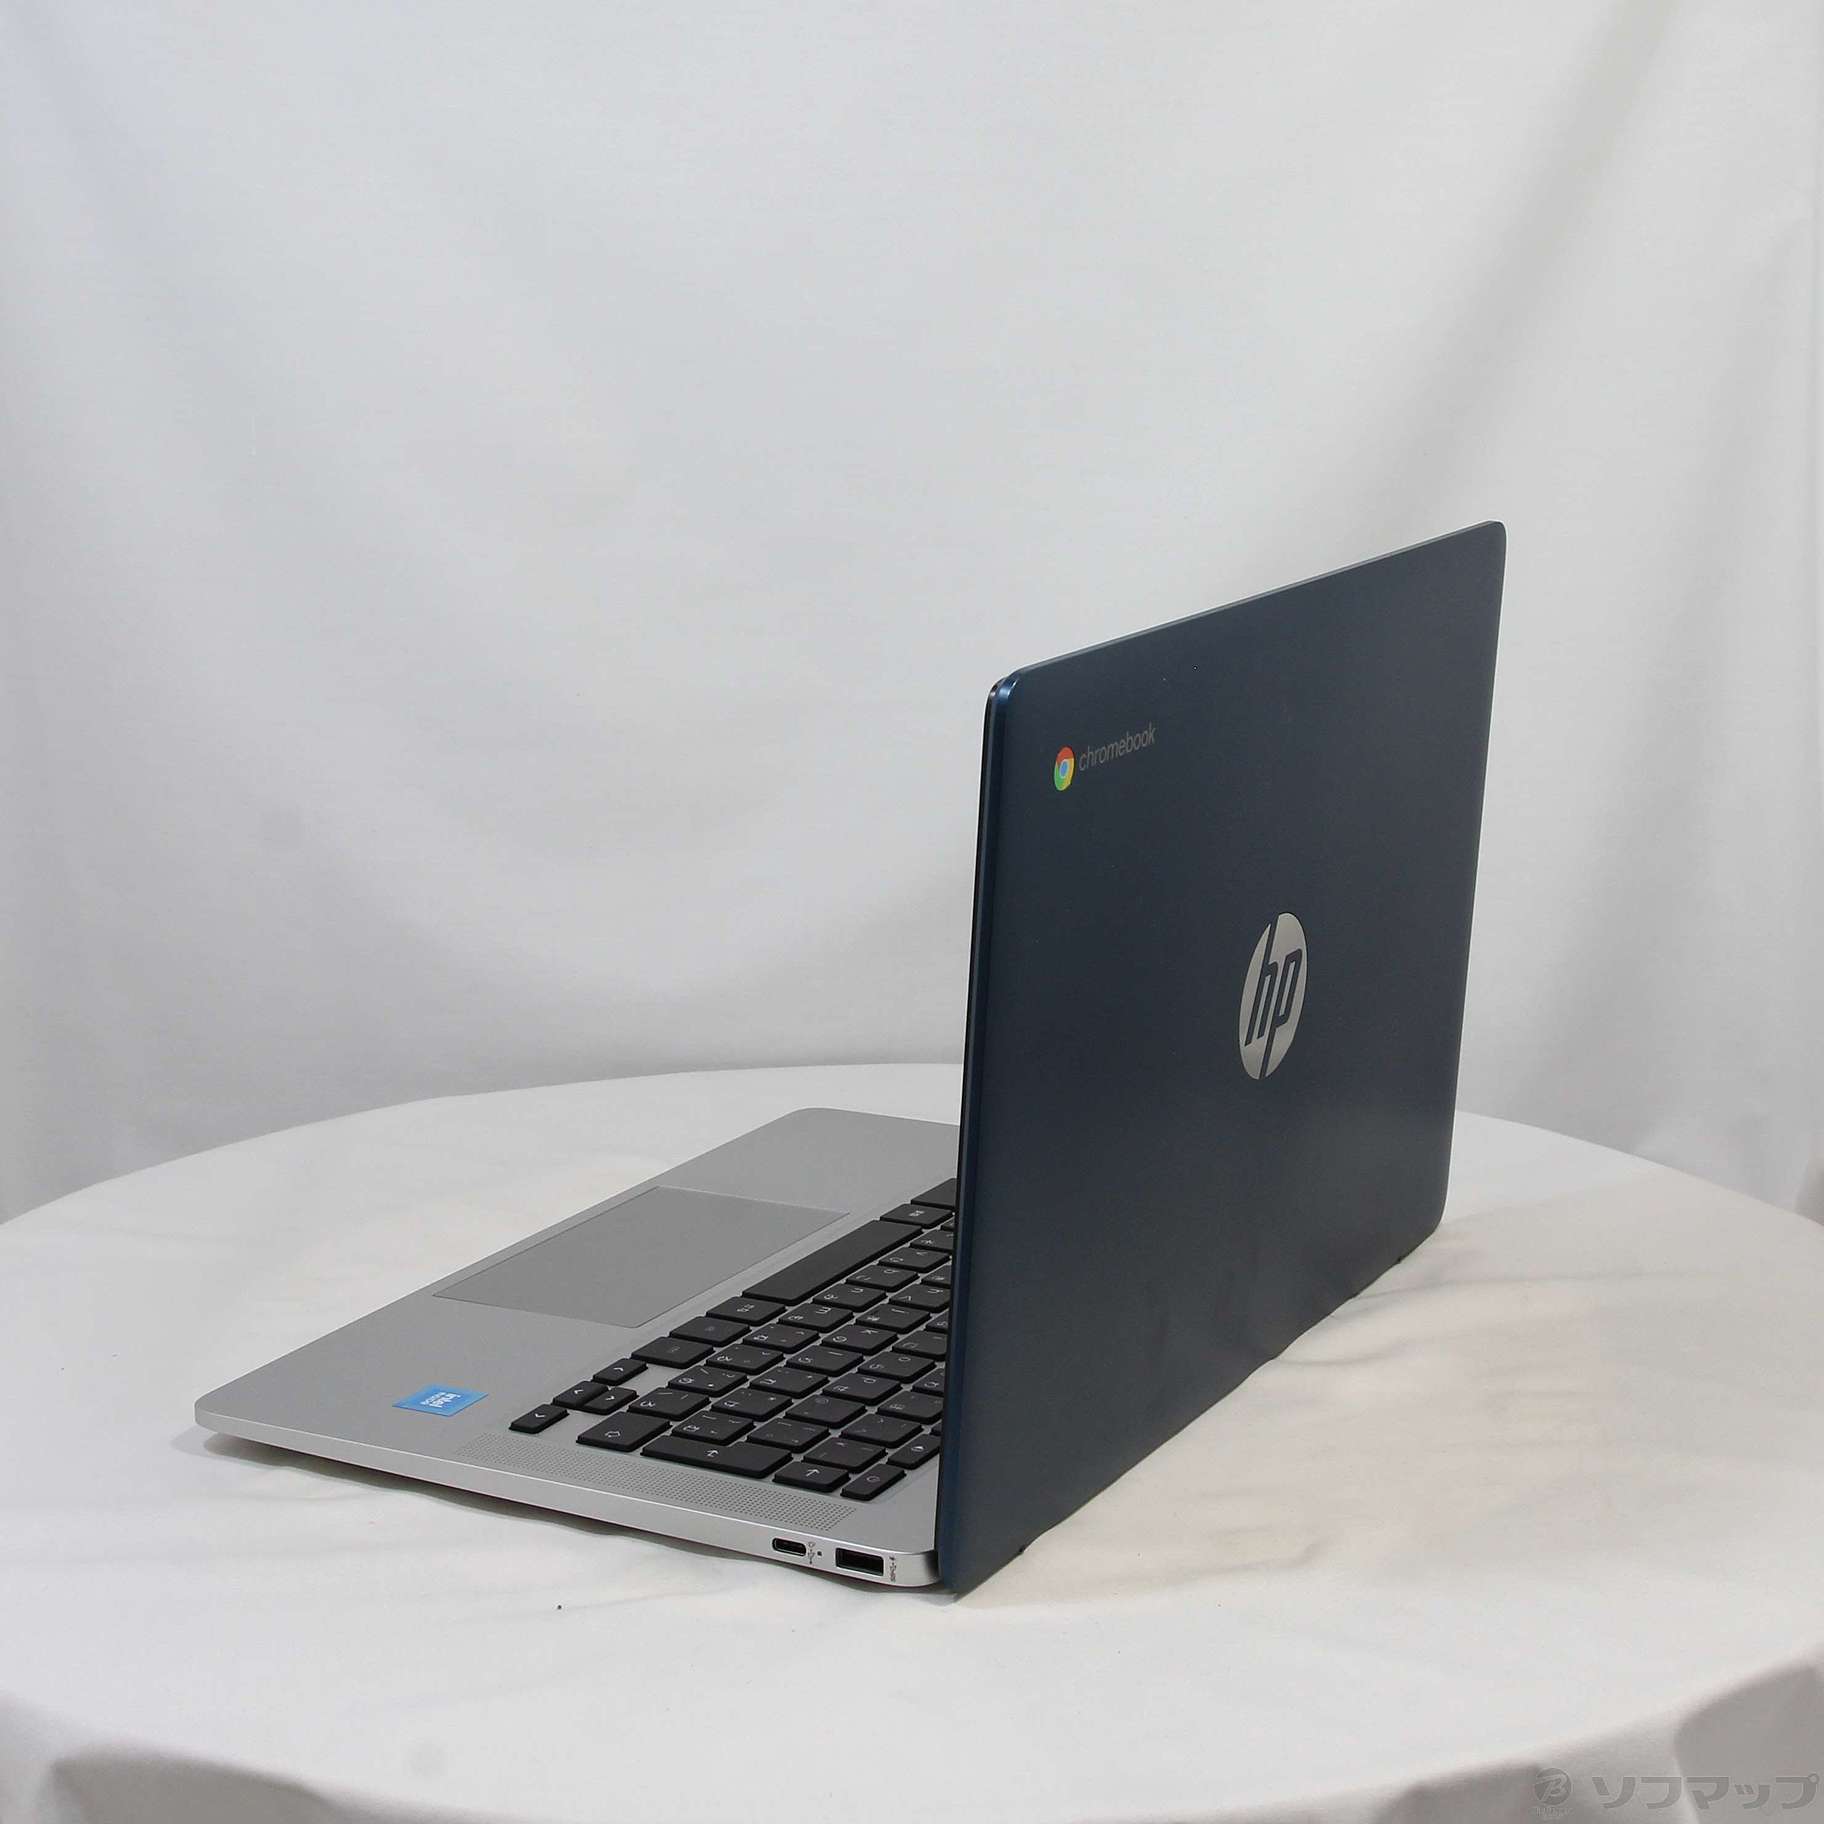 HP Chromebook 14a-na1001TU 4K2J2PA-AAAA